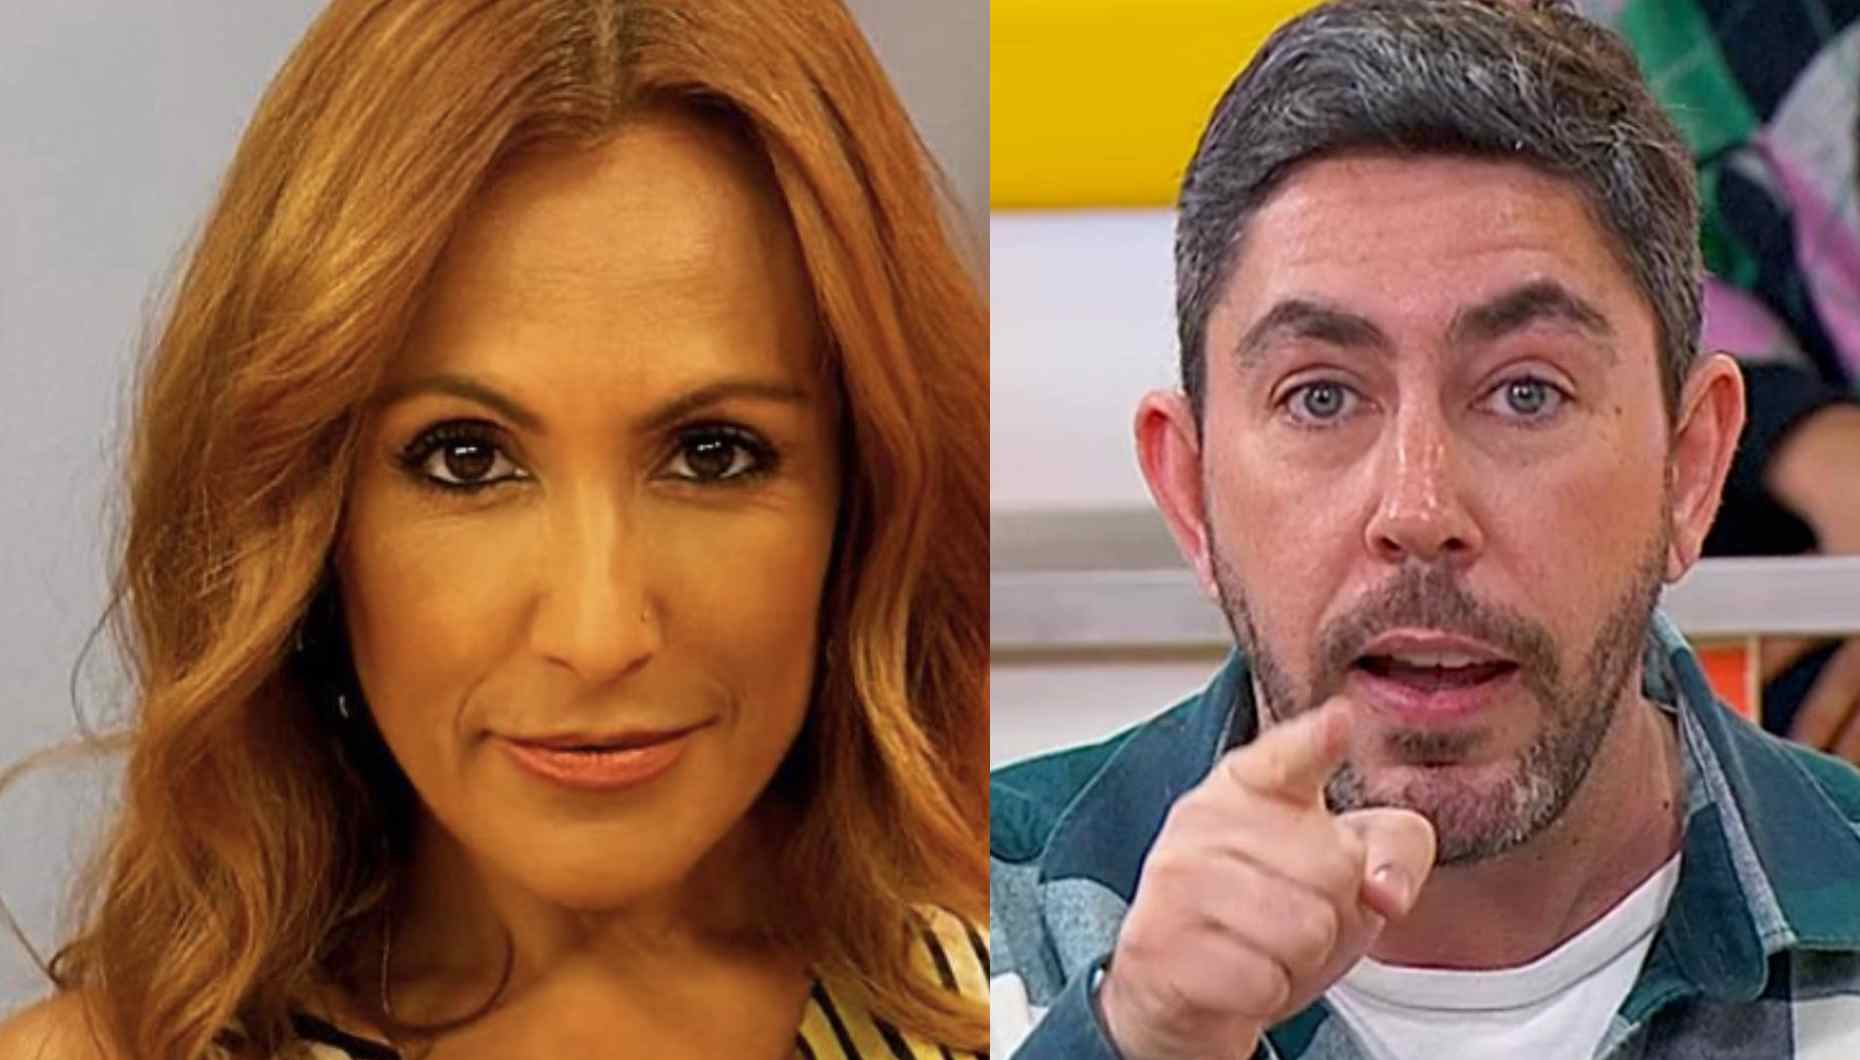 Adriano Silva Martins Puxão de orelhas a Susana Dias Ramos: "sou do tempo, em que se diziam coisas interessantes"